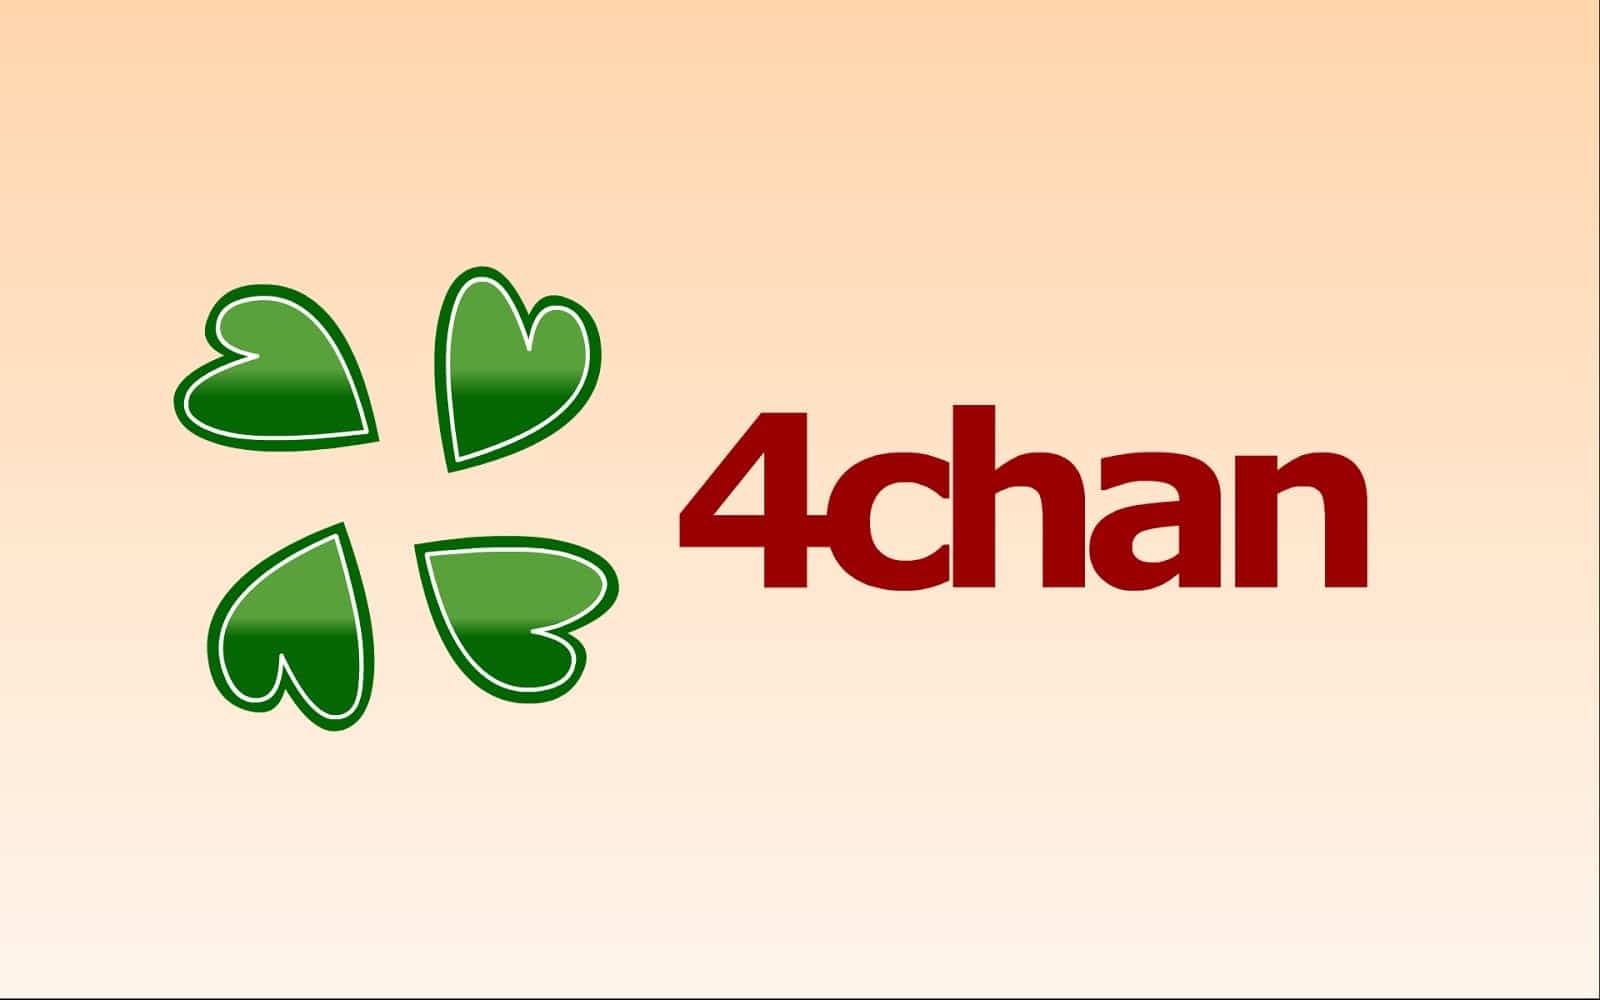 6 من أفضل التطبيقات لعرض منتدى 4chan لنظام التشغيل Android و iOS - Android iOS